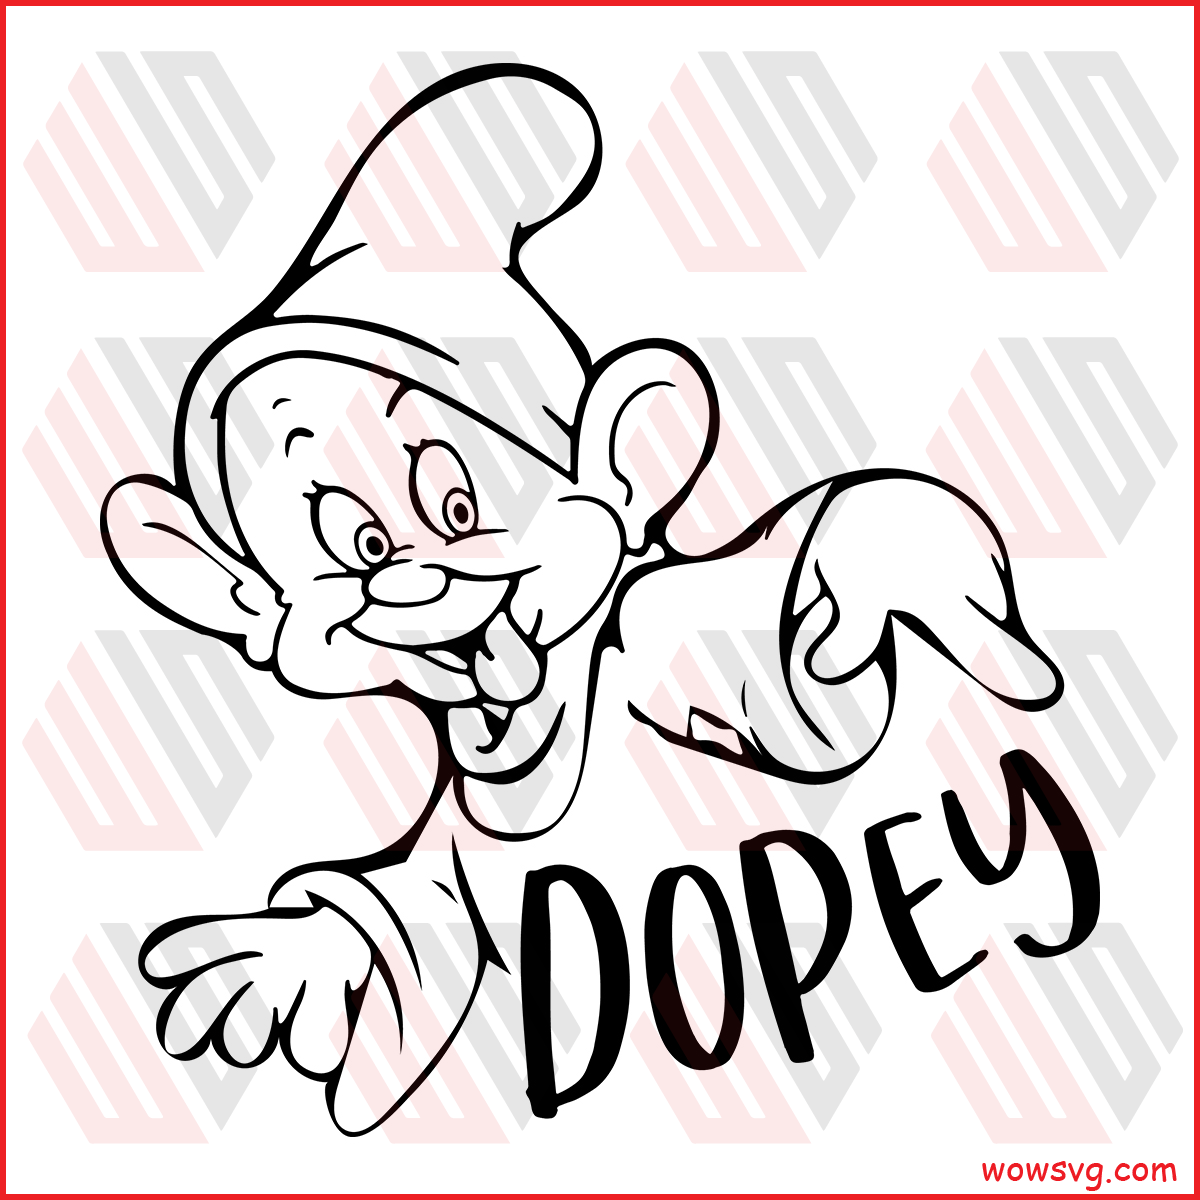 Dopey Svg Free Trending Svg Disney Svg Dwarf Svg Intant Images And Photos Finder 